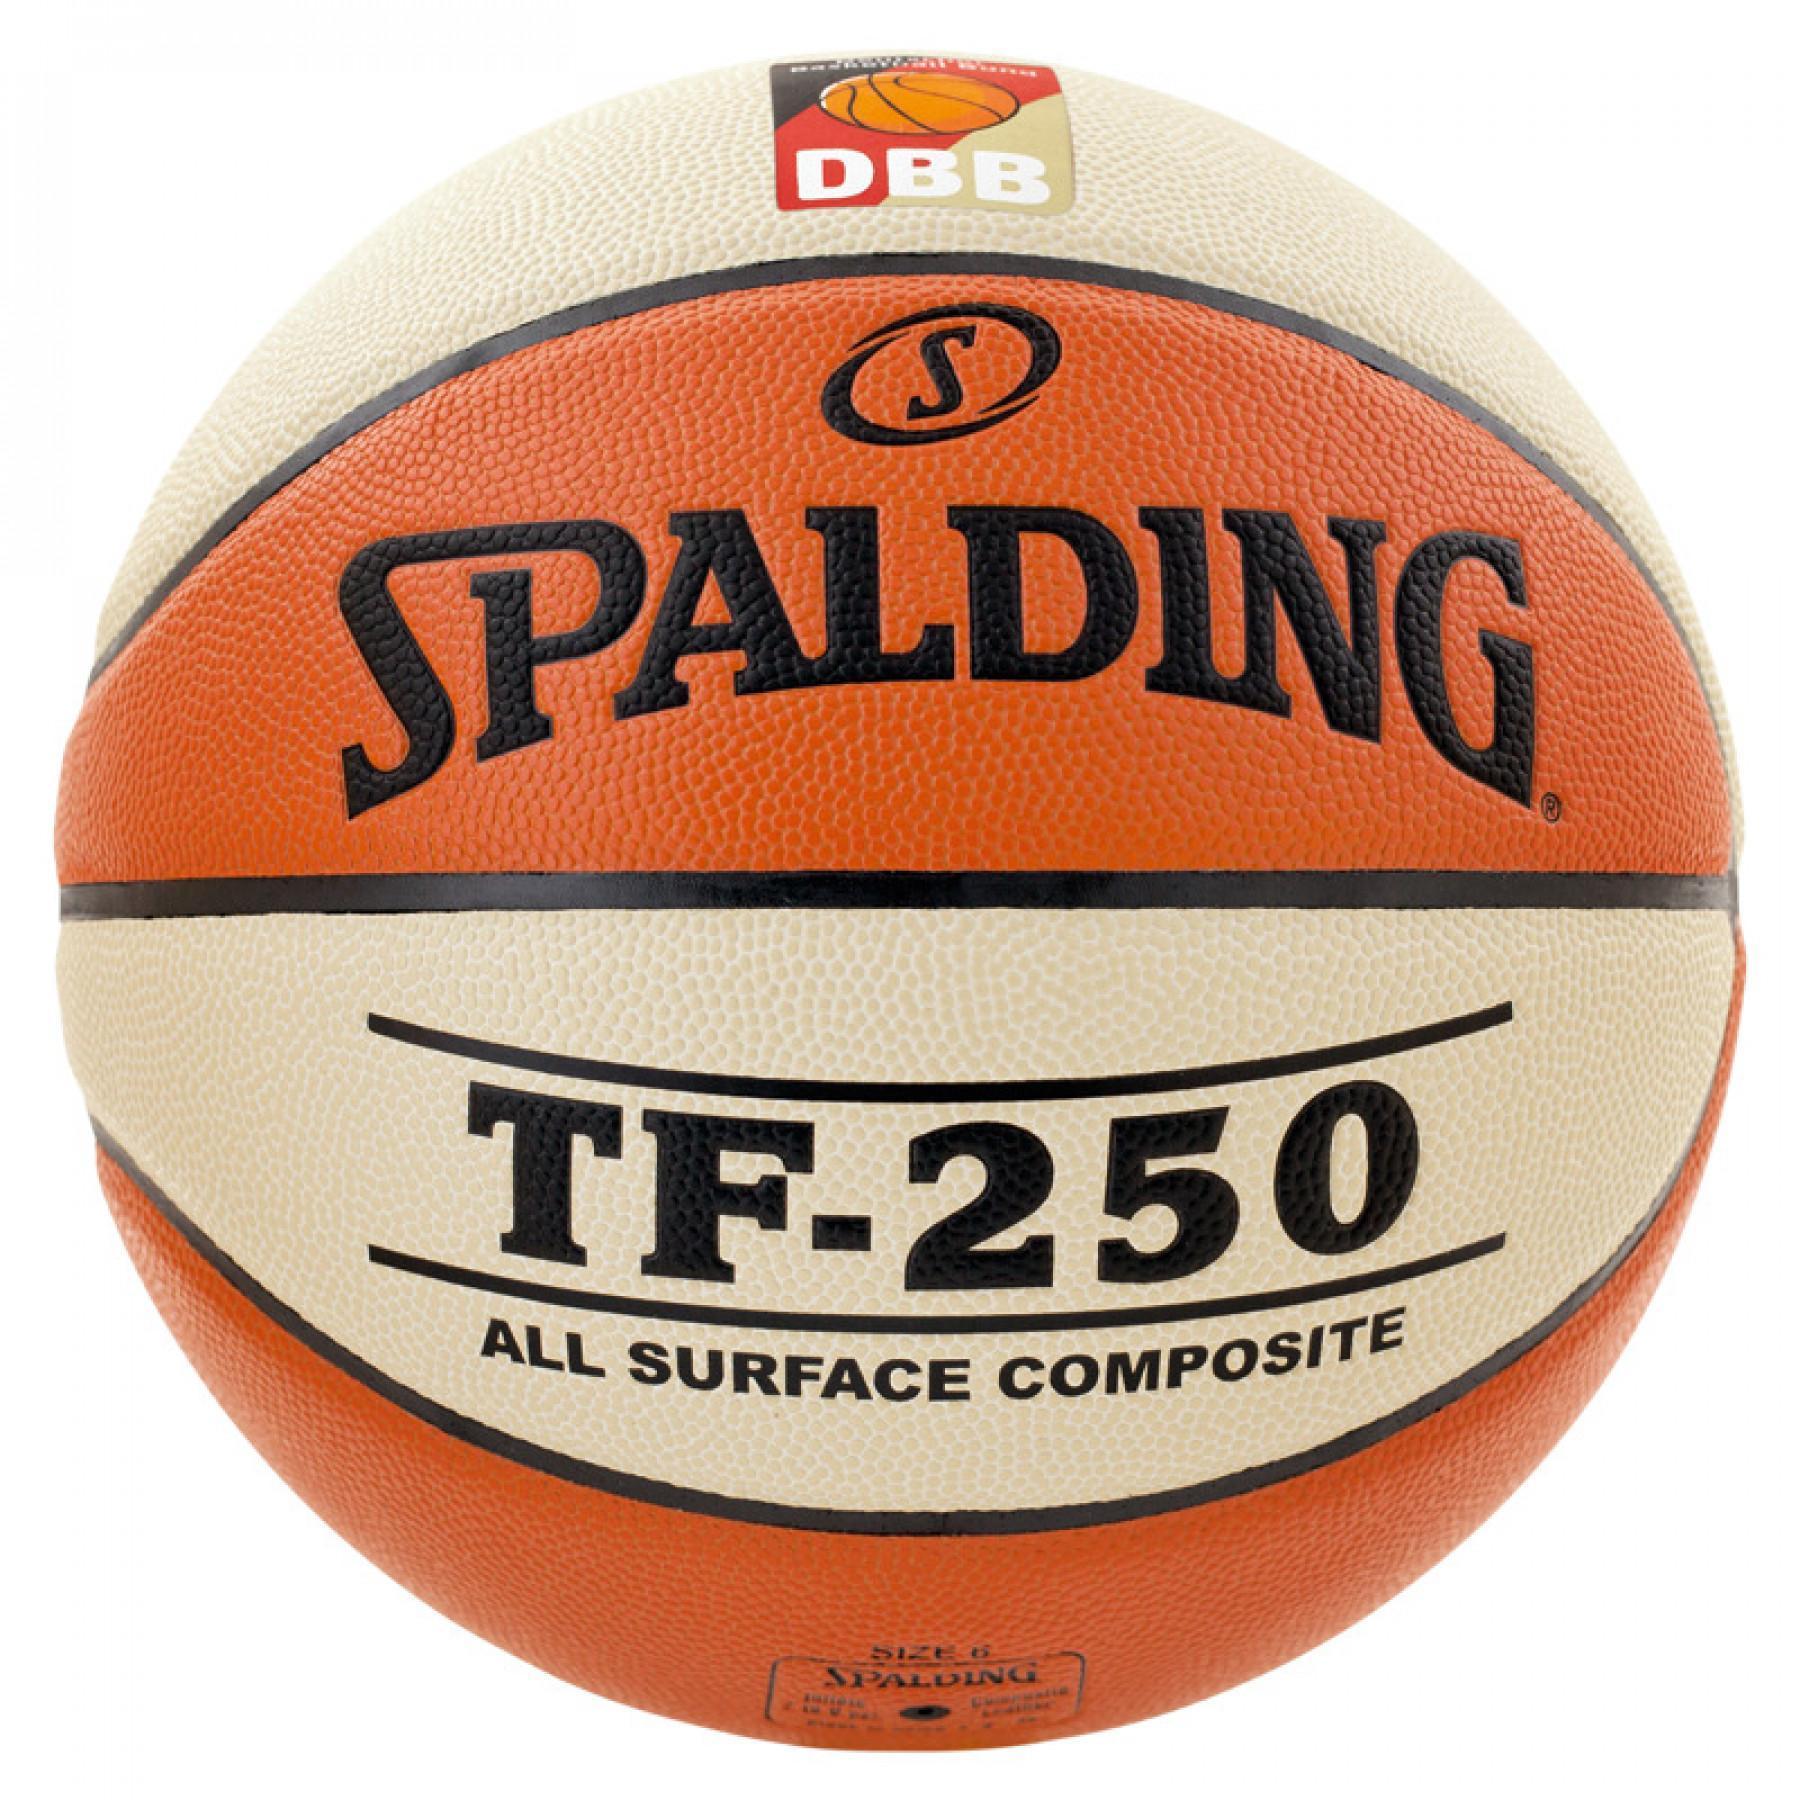 Balloon Spalding DBB Tf250 (74-593z)